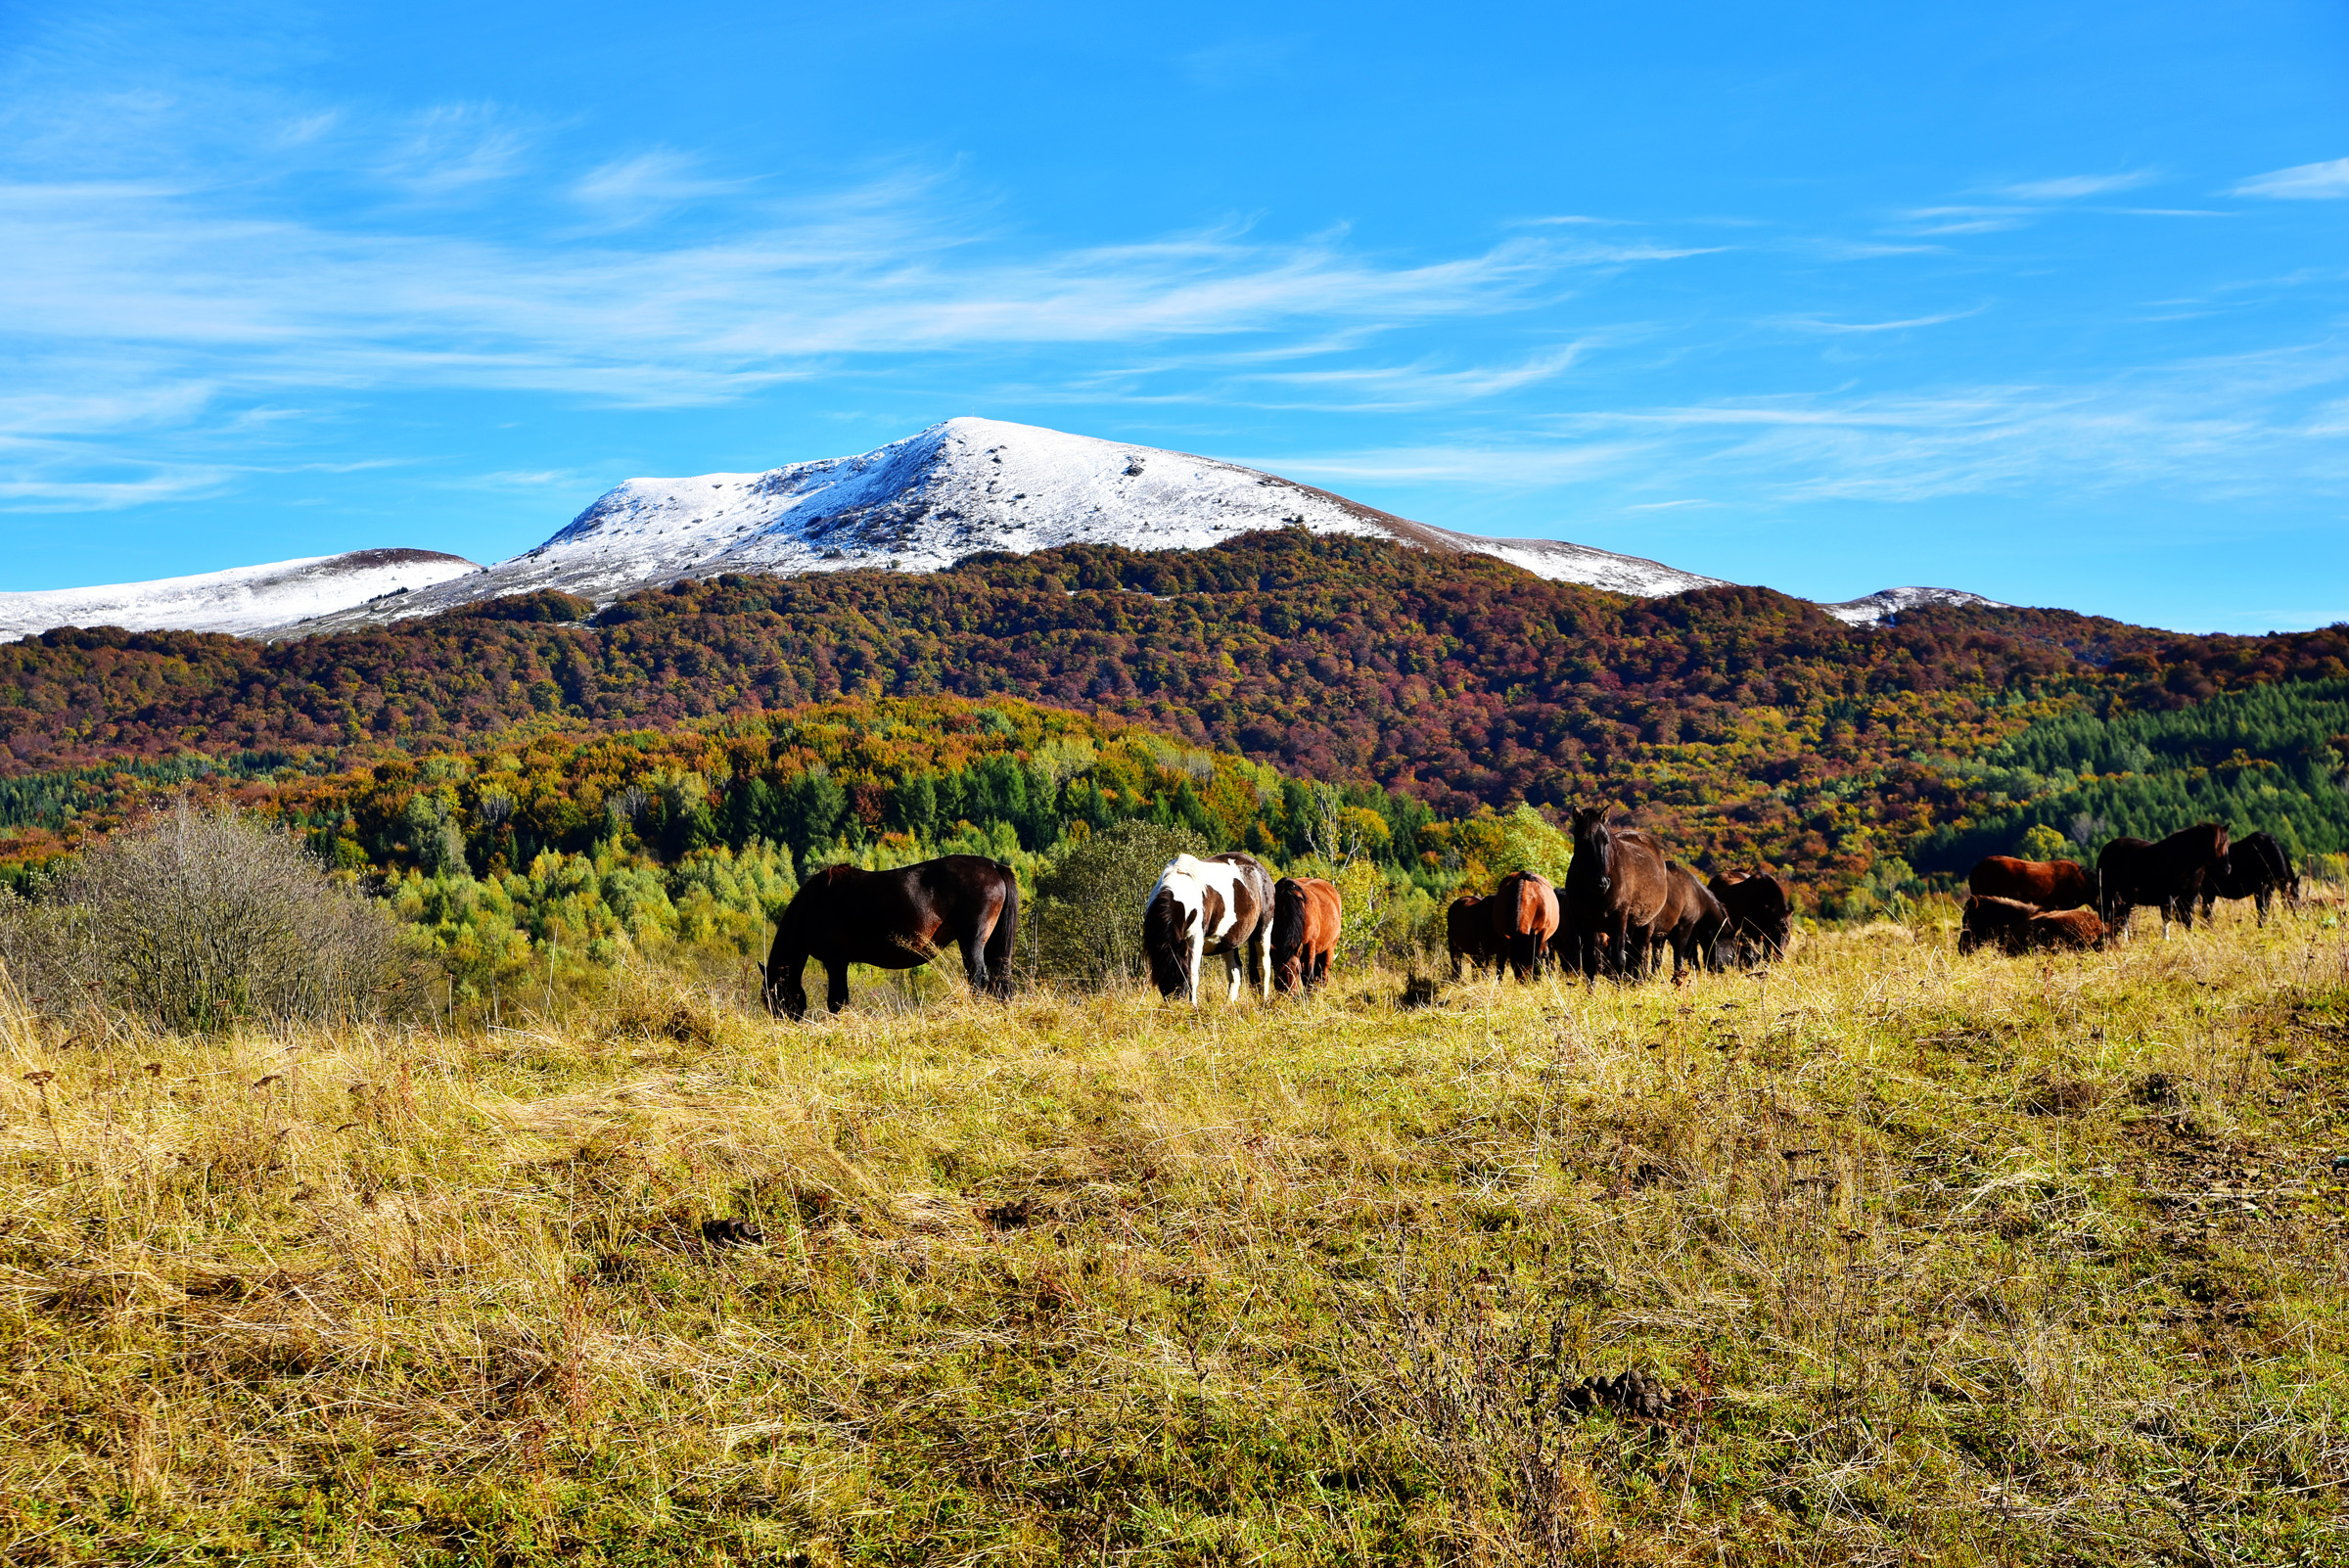 Szczyt góry pokryty śniegiem, niżej drzewa w jesiennych kolorach. Na pierwszym planie konie na polanie.